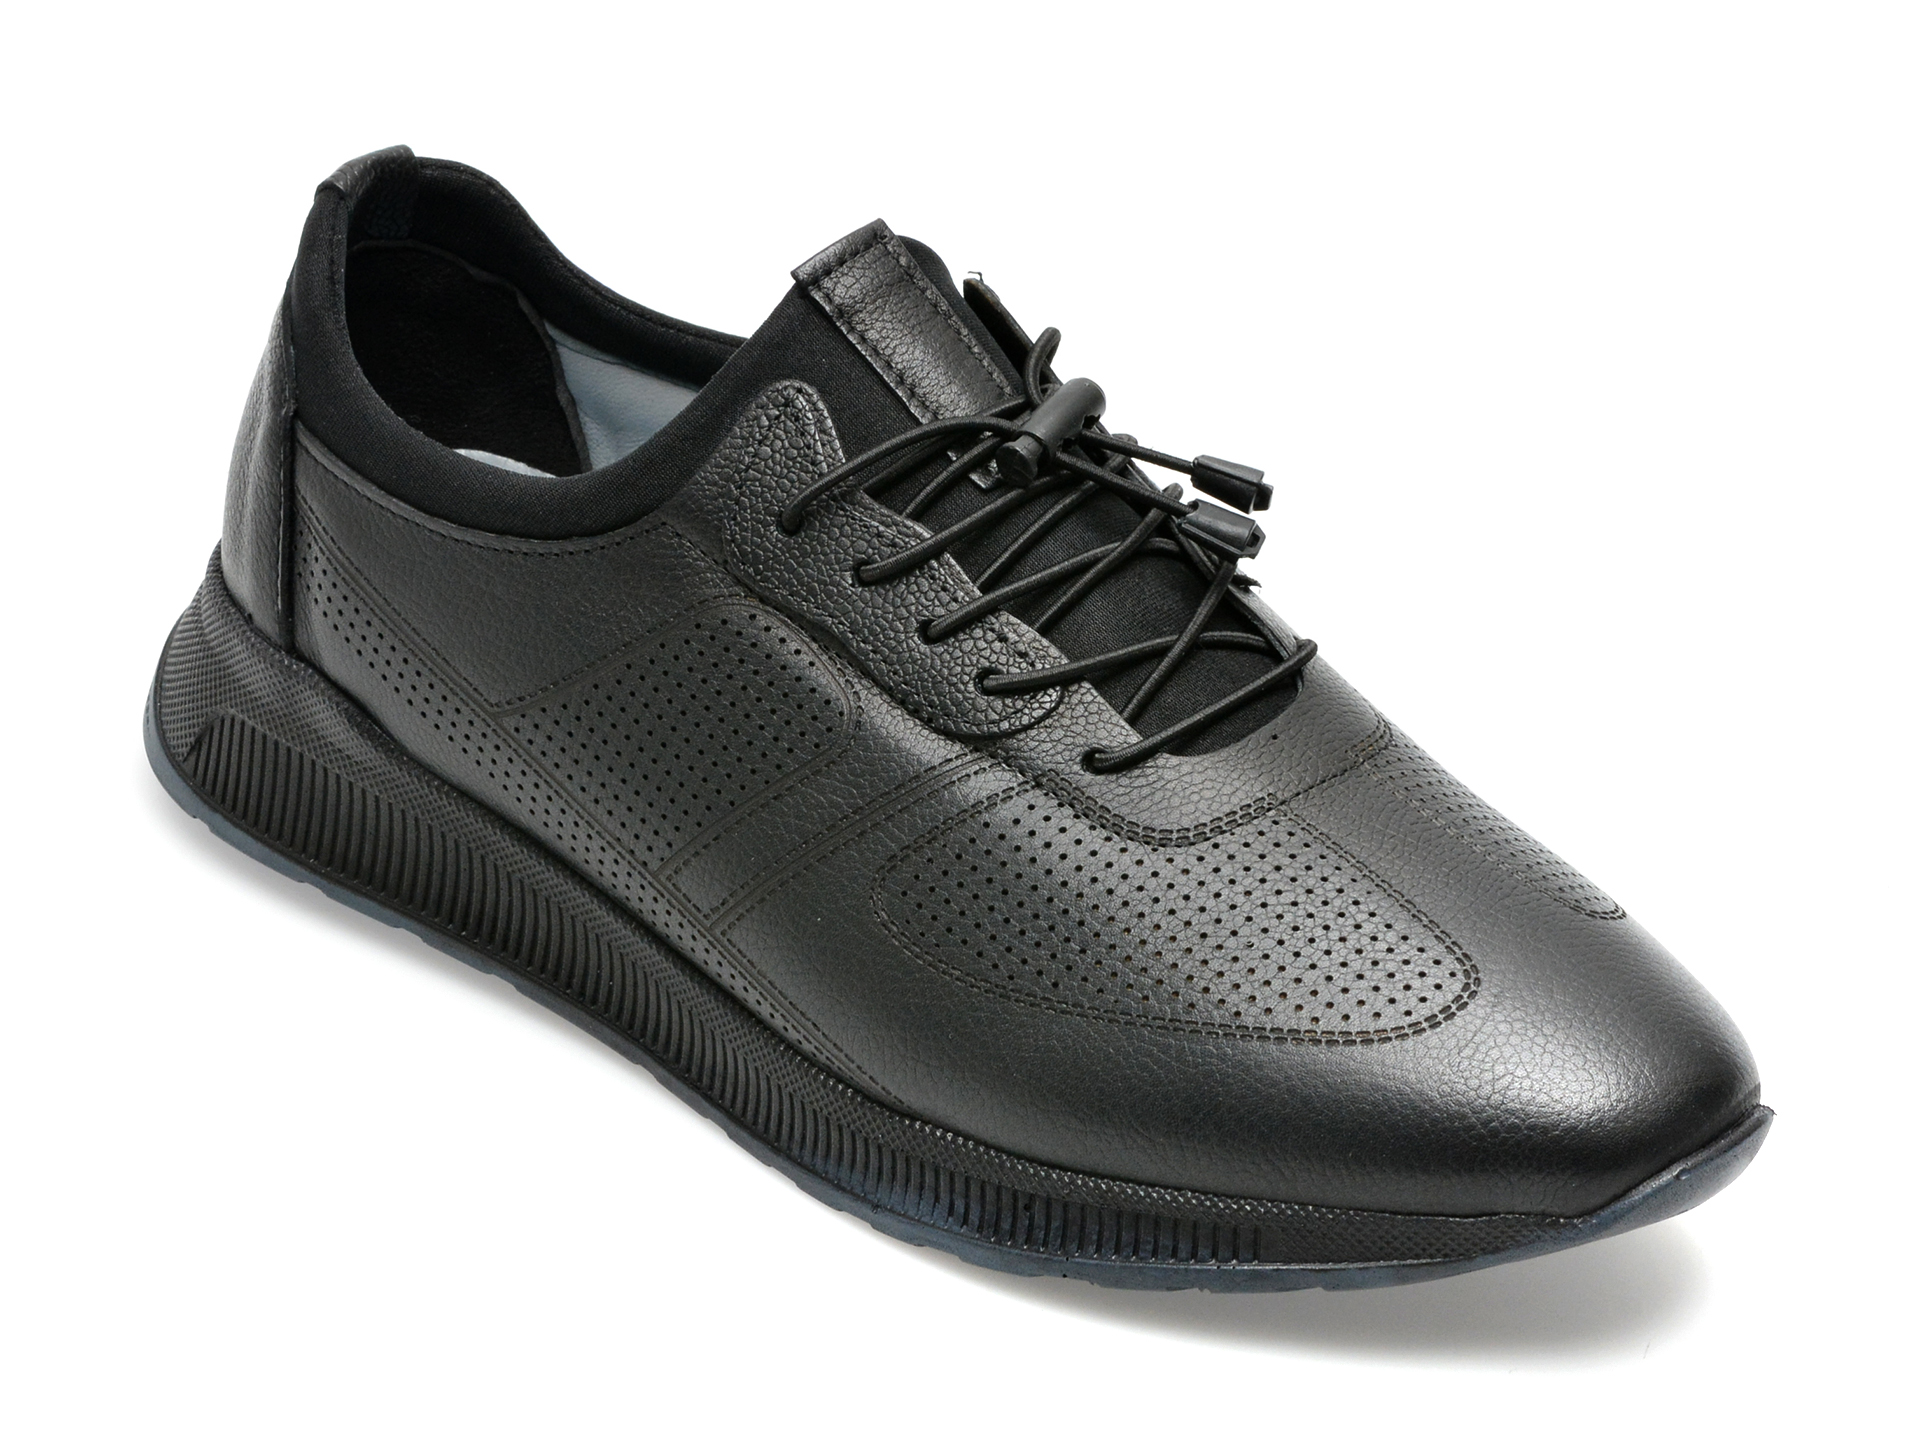 Pantofi AXXELLL negri, OY504A, din piele naturala /barbati/pantofi